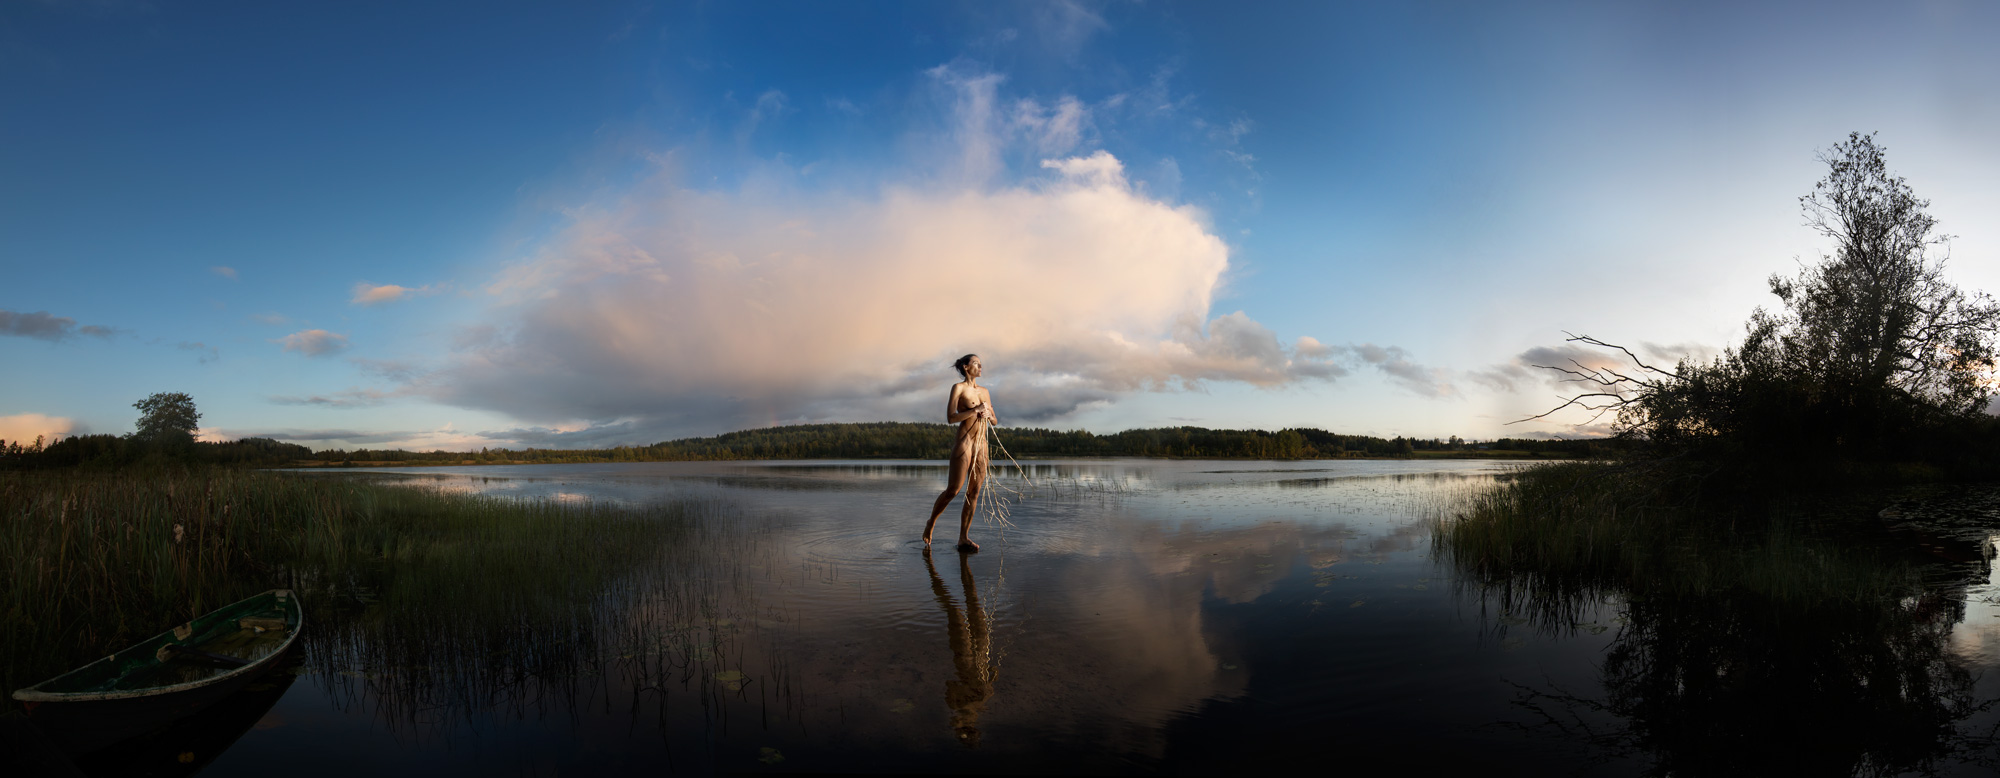 KÄÄNNA JUURI VIII. Fotografía y retoque digital. Lago Parilanjarvi, Hämeenkyrö, Finlandia